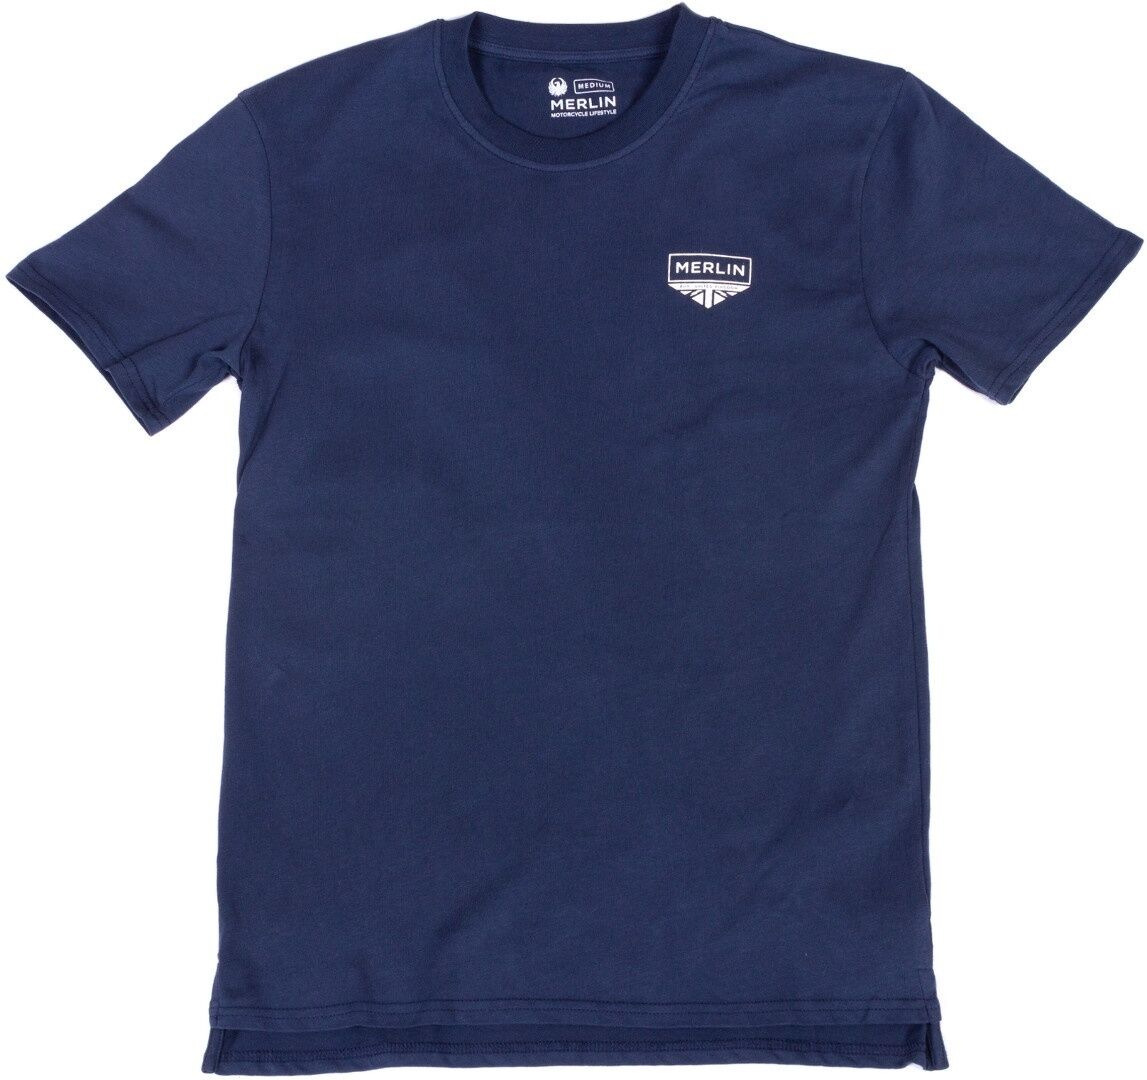 Merlin Truro Signature Camiseta - Azul